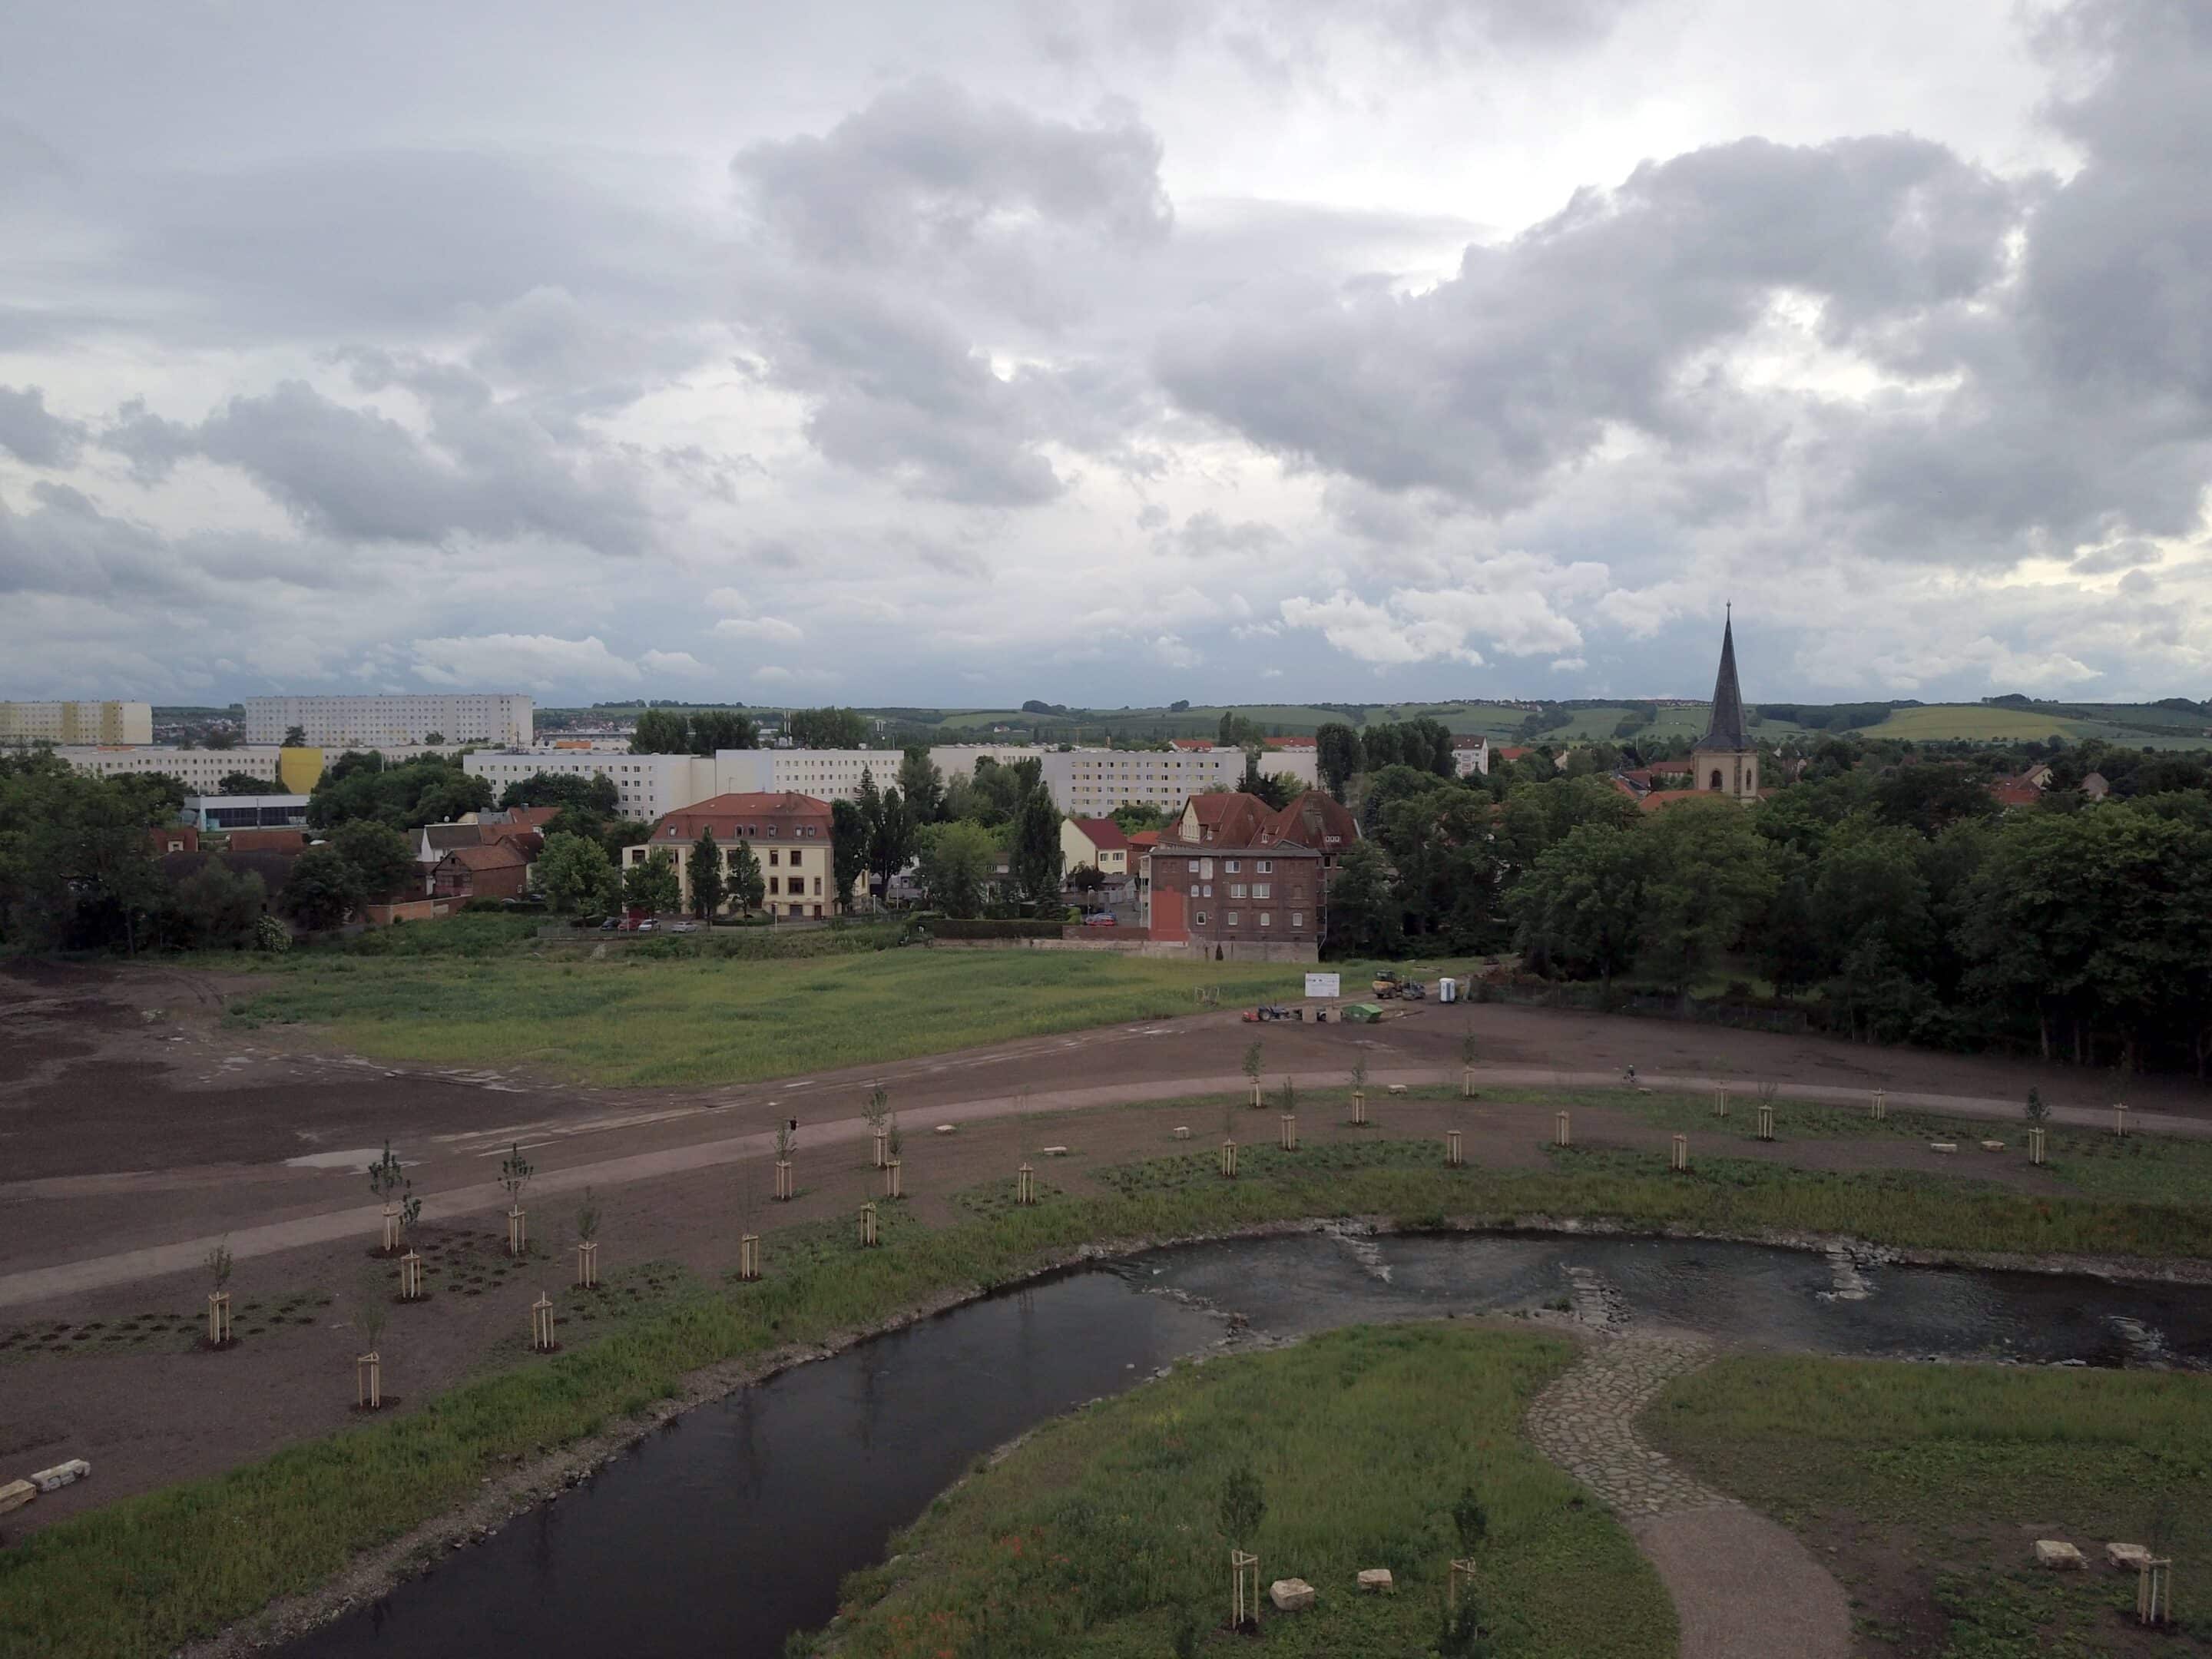 Luftbild vom Park am ehemaligen Heizkraftwerk Erfurt Gispersleben 2017.